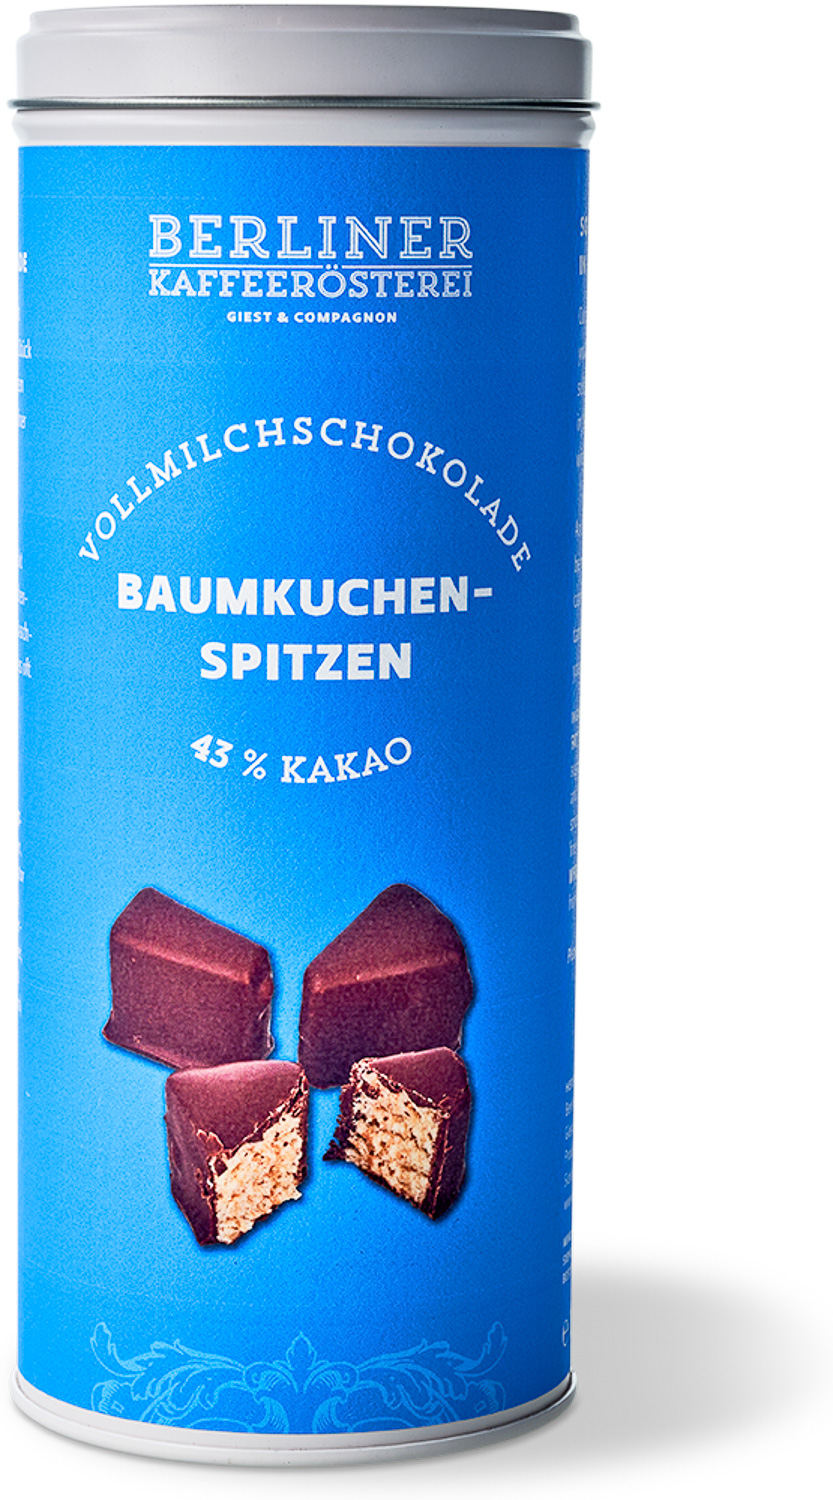 Baumkuchenkonfekt in Edelvollmilchschokolade 43%